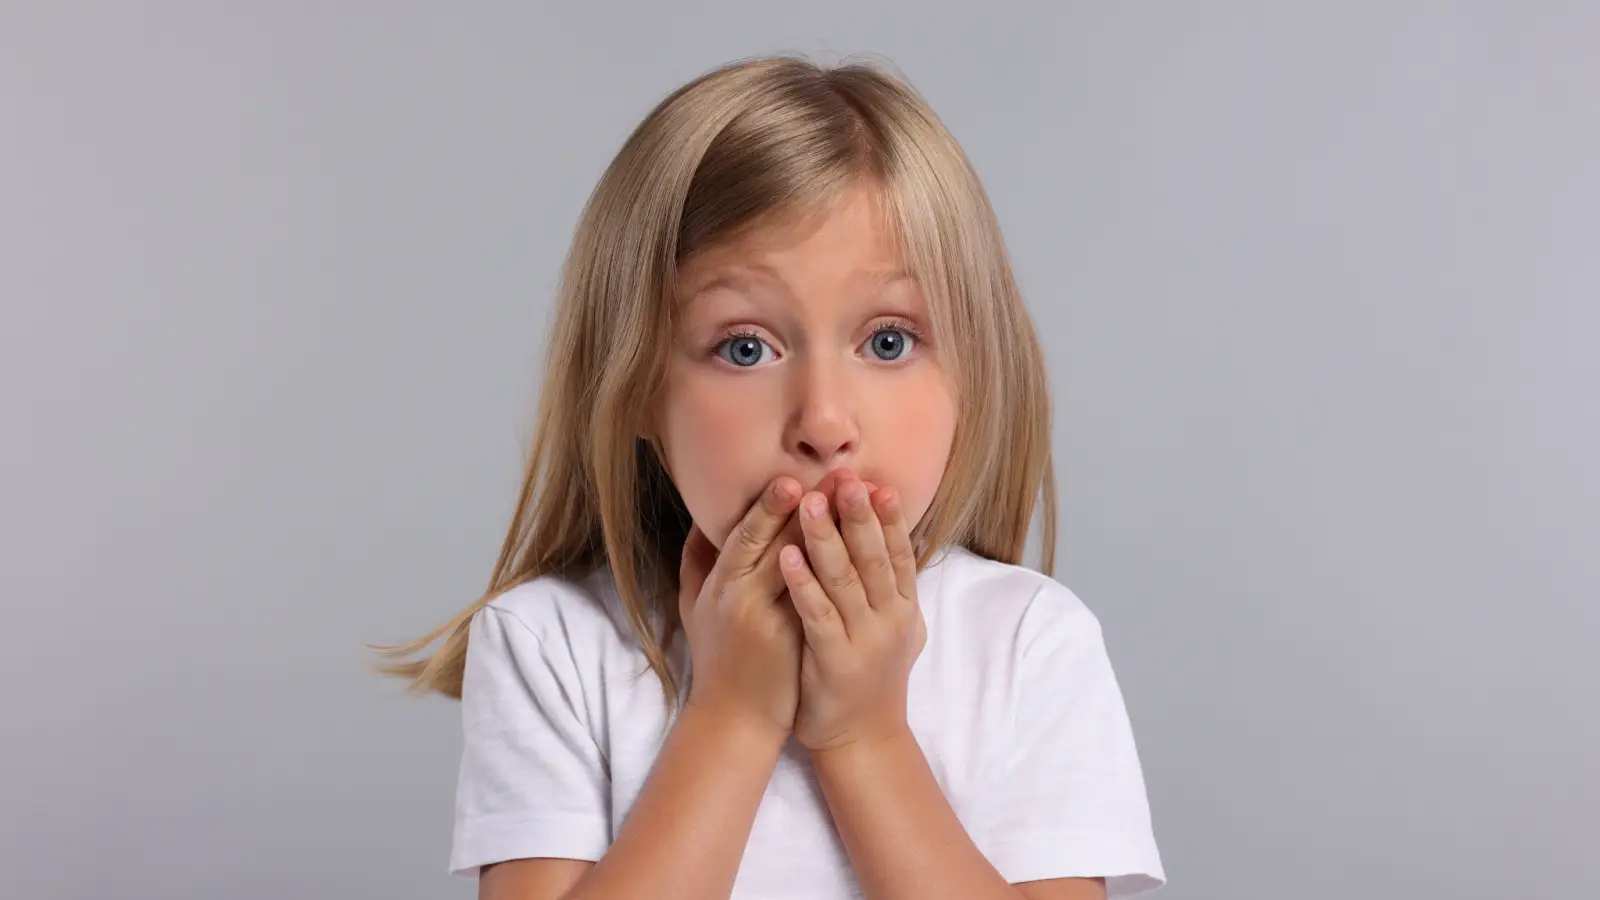 ما هي أسباب التبول اللاإرادي المفاجئ عند الأطفال؟